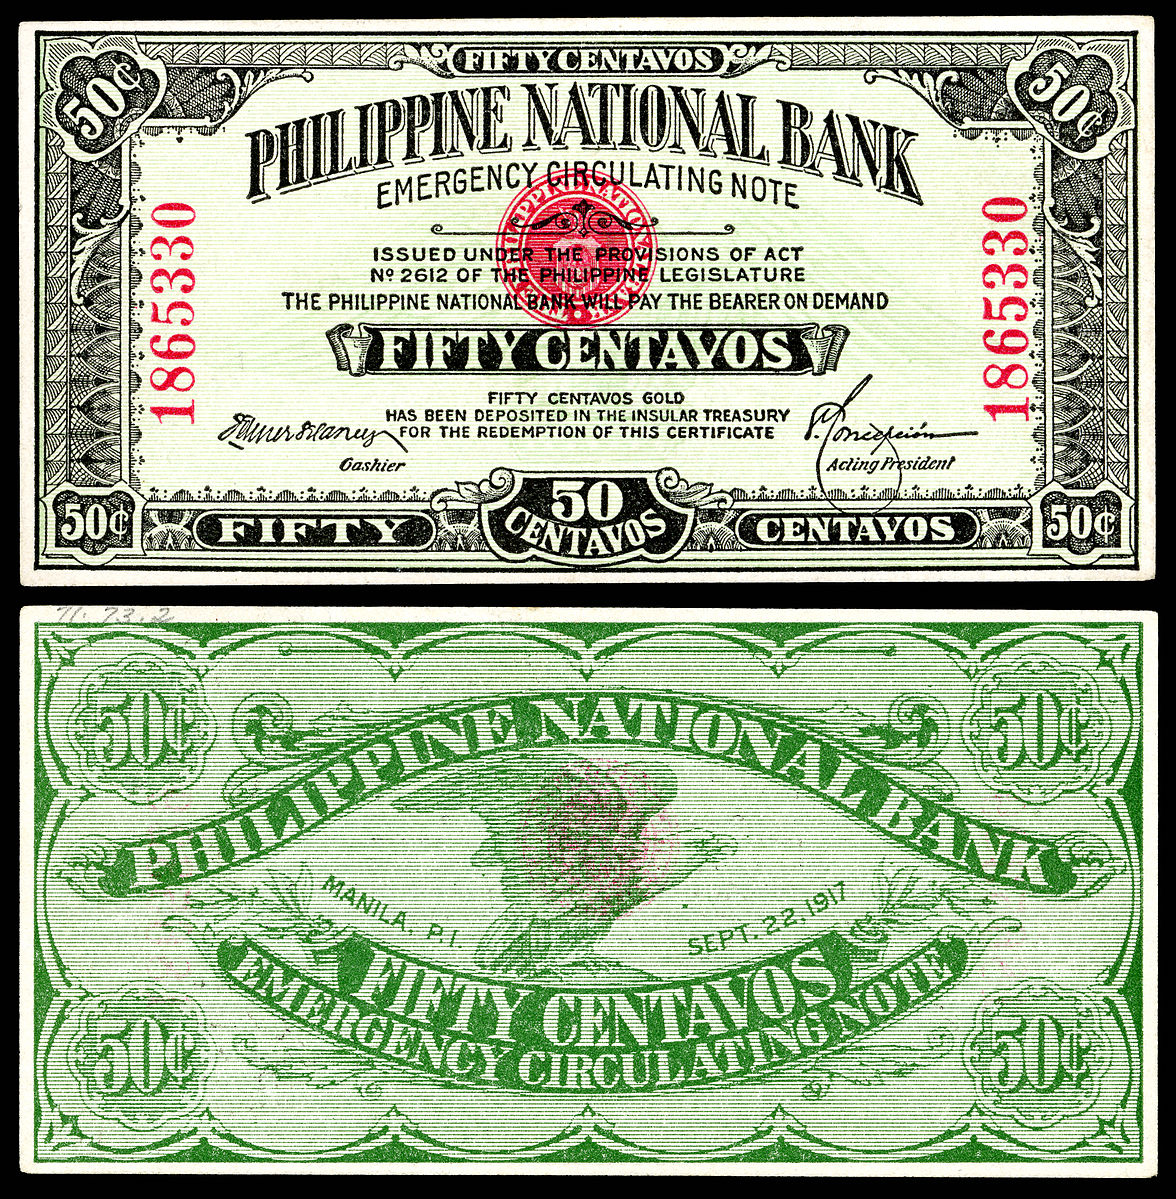 Первые 50 банков. Филиппинский национальный банк. Банка на Филиппинах. $50 National Bank Note. 50 Centavos 1899 Español купюра.